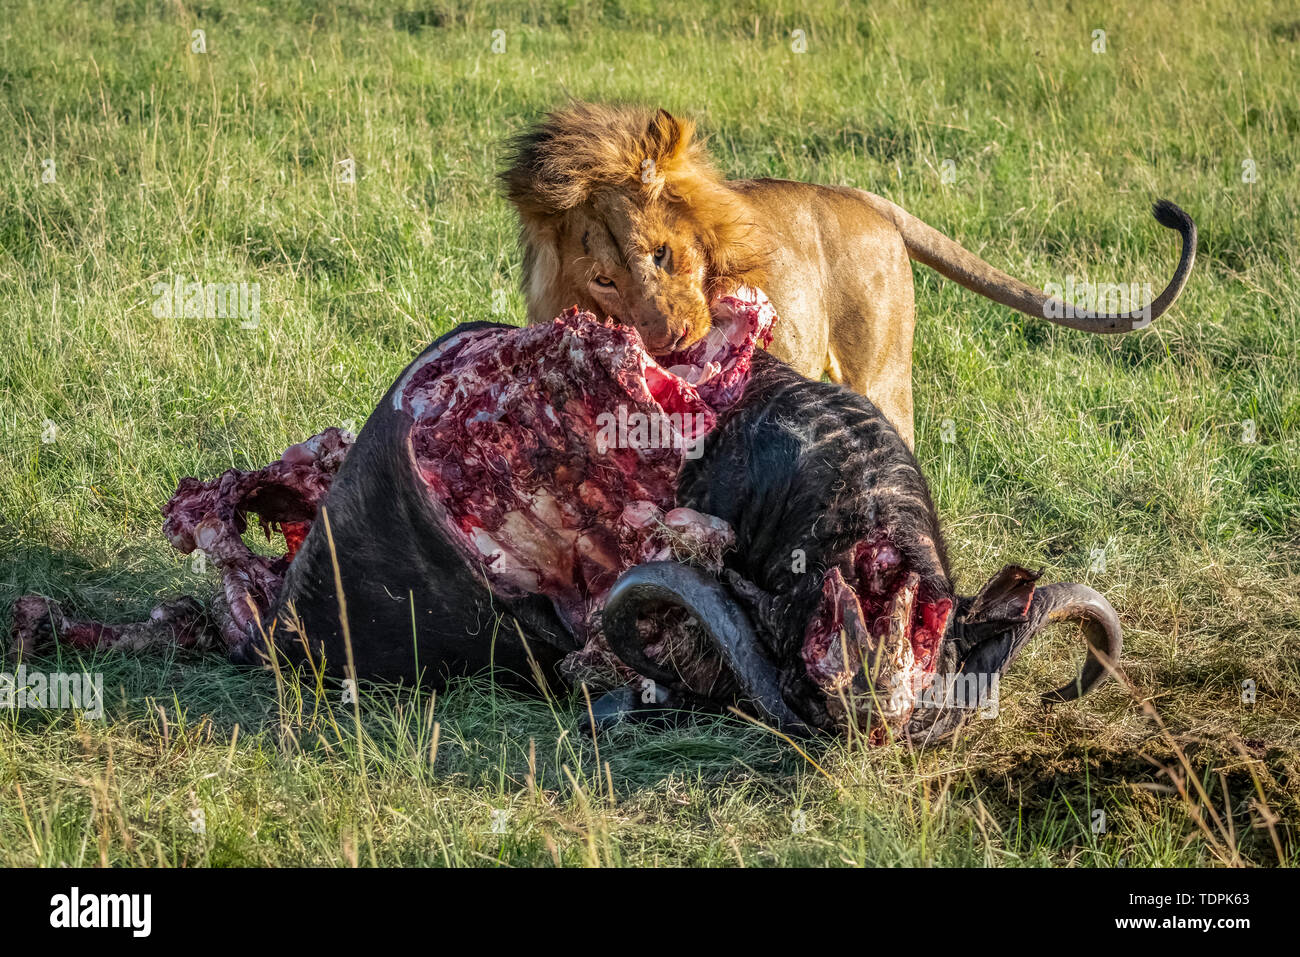 Male lion (Panthera leo) se nourrit de carcasses de bison sanglante, le Parc National du Serengeti, Tanzanie Banque D'Images